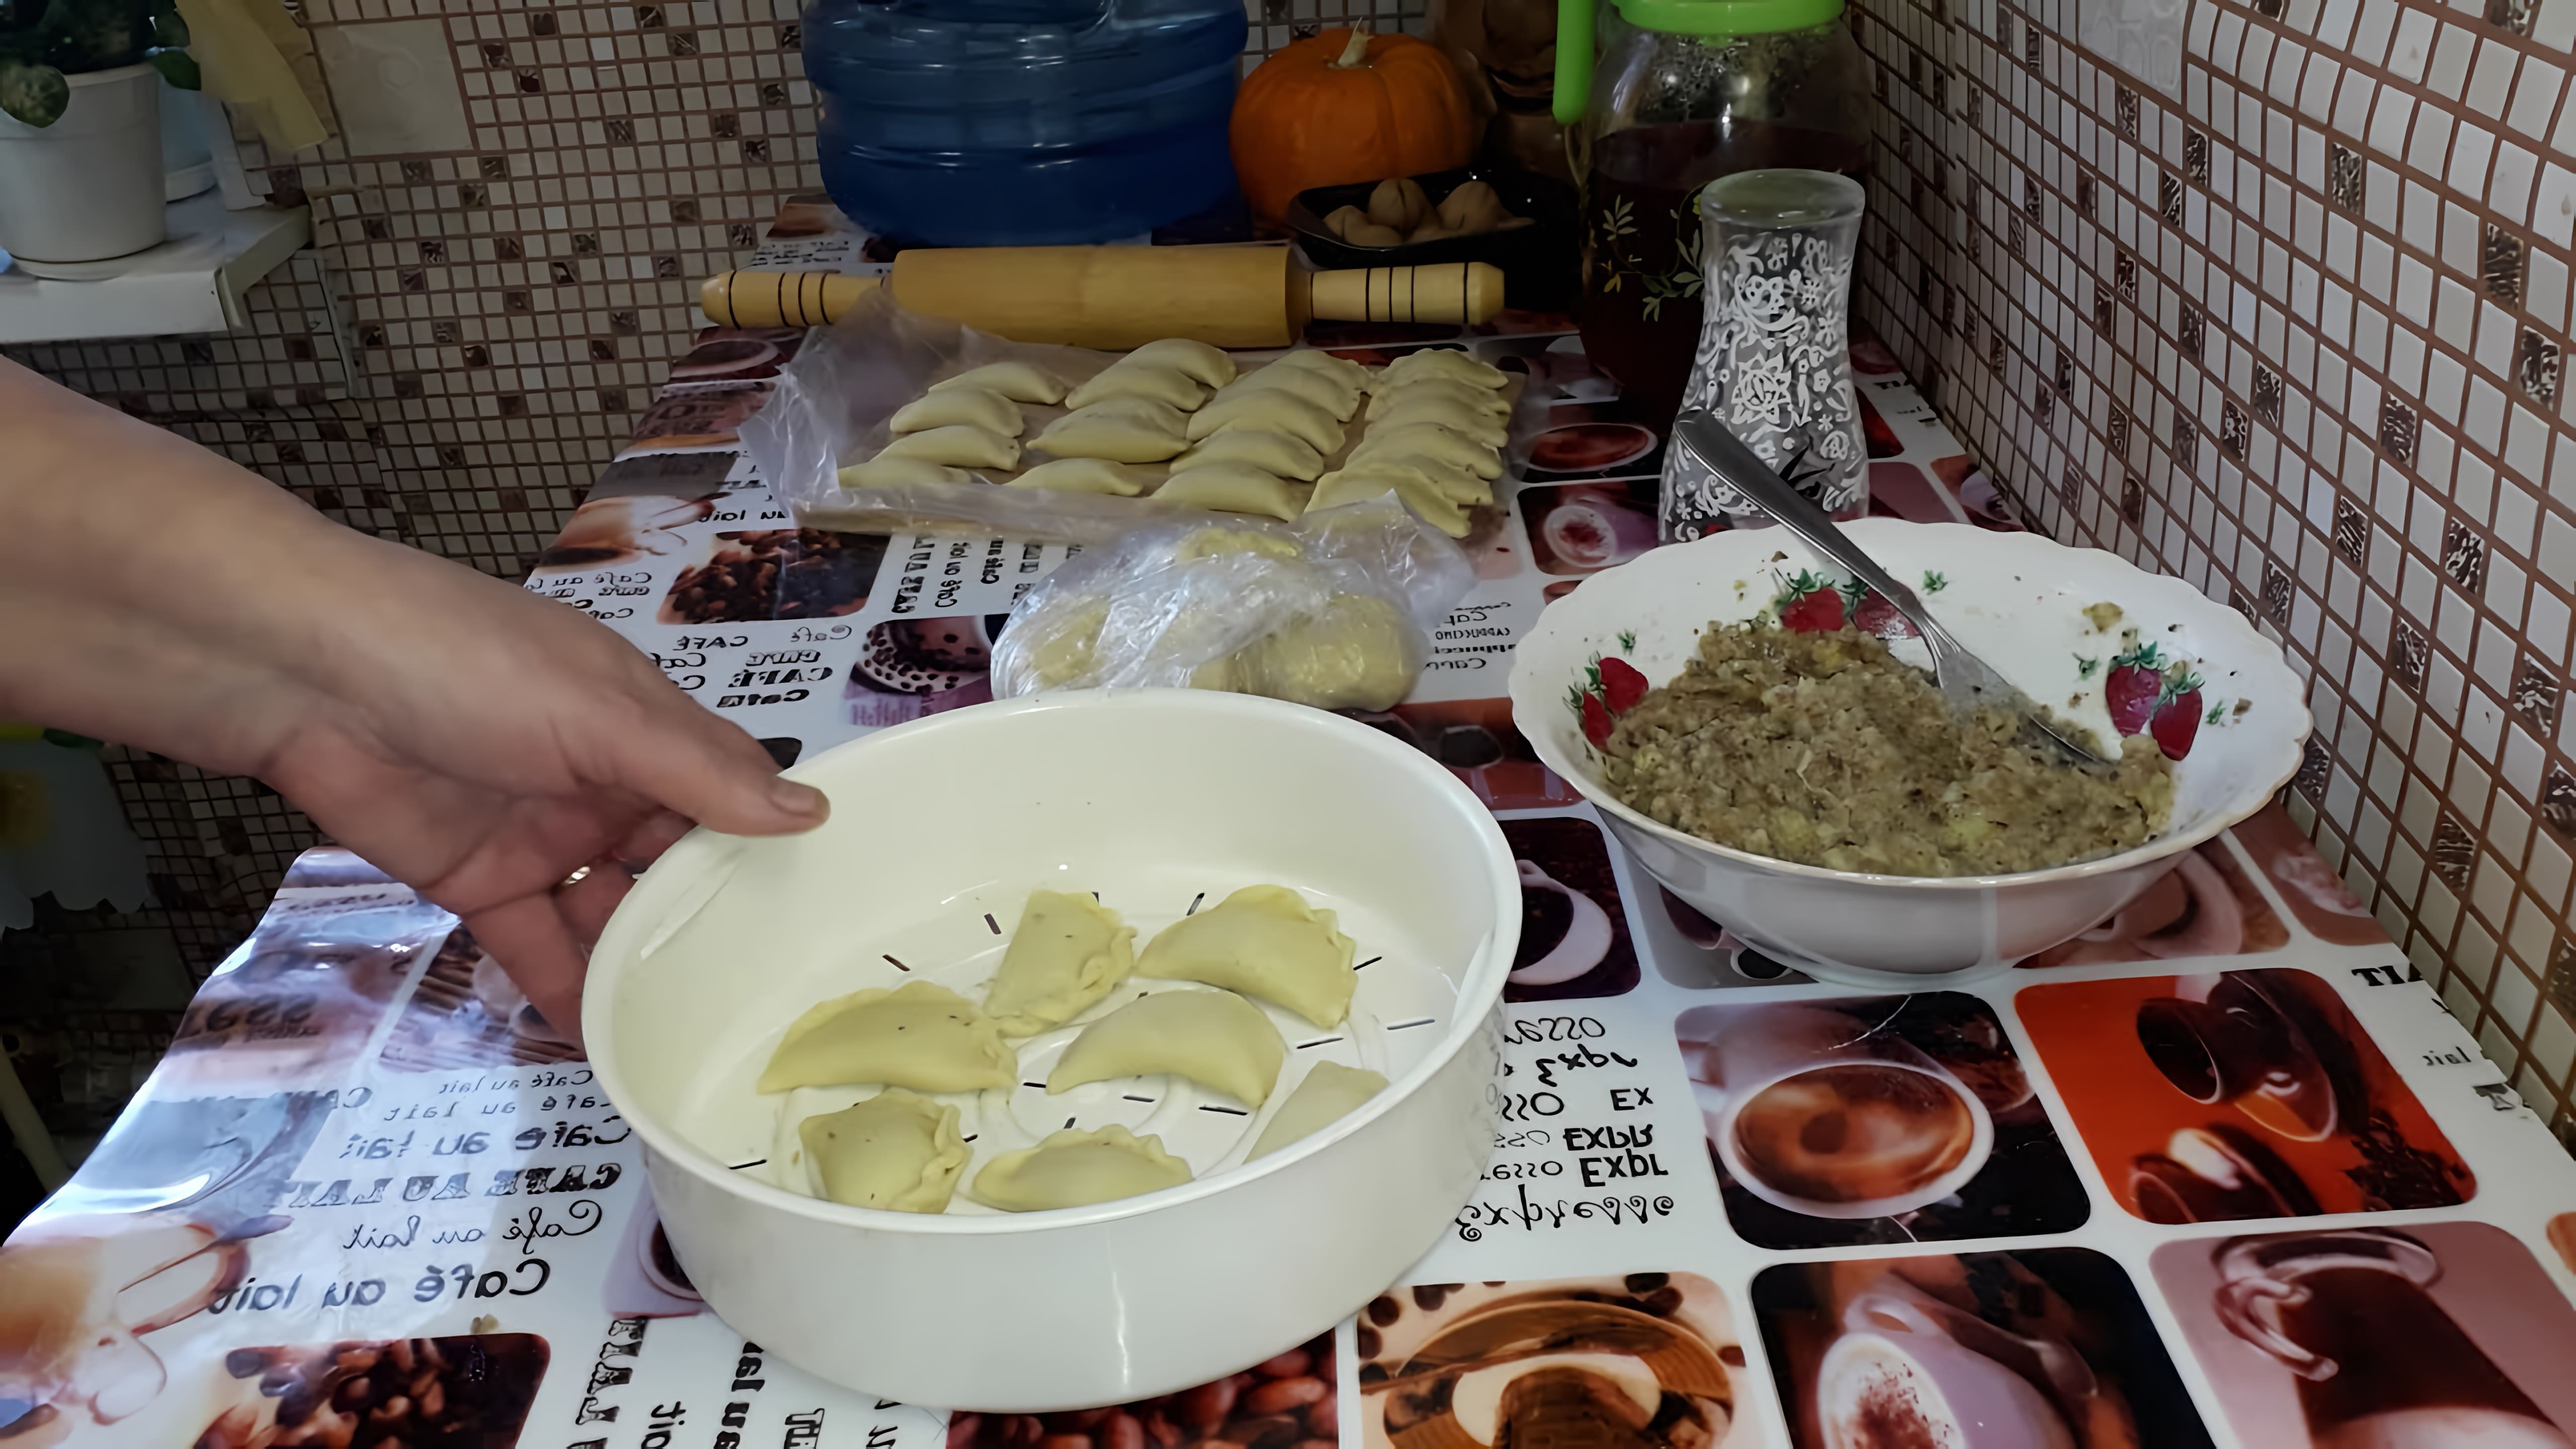 В этом видео демонстрируется процесс приготовления вареников с картошкой и рыжиками